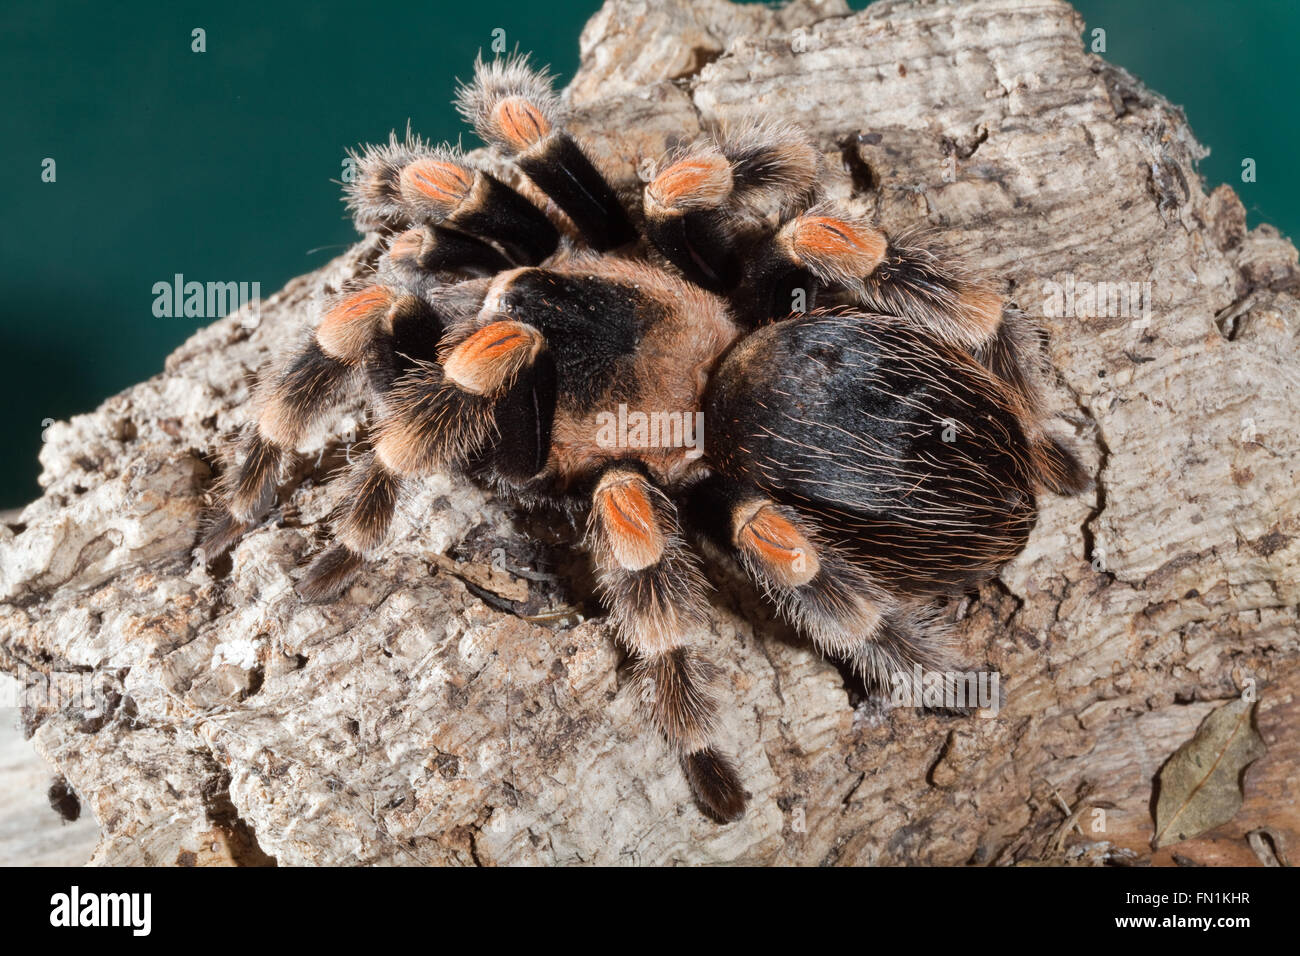 Mexican Red-kneed Spider or Tarantula (Brachypelma  smithi). Stock Photo